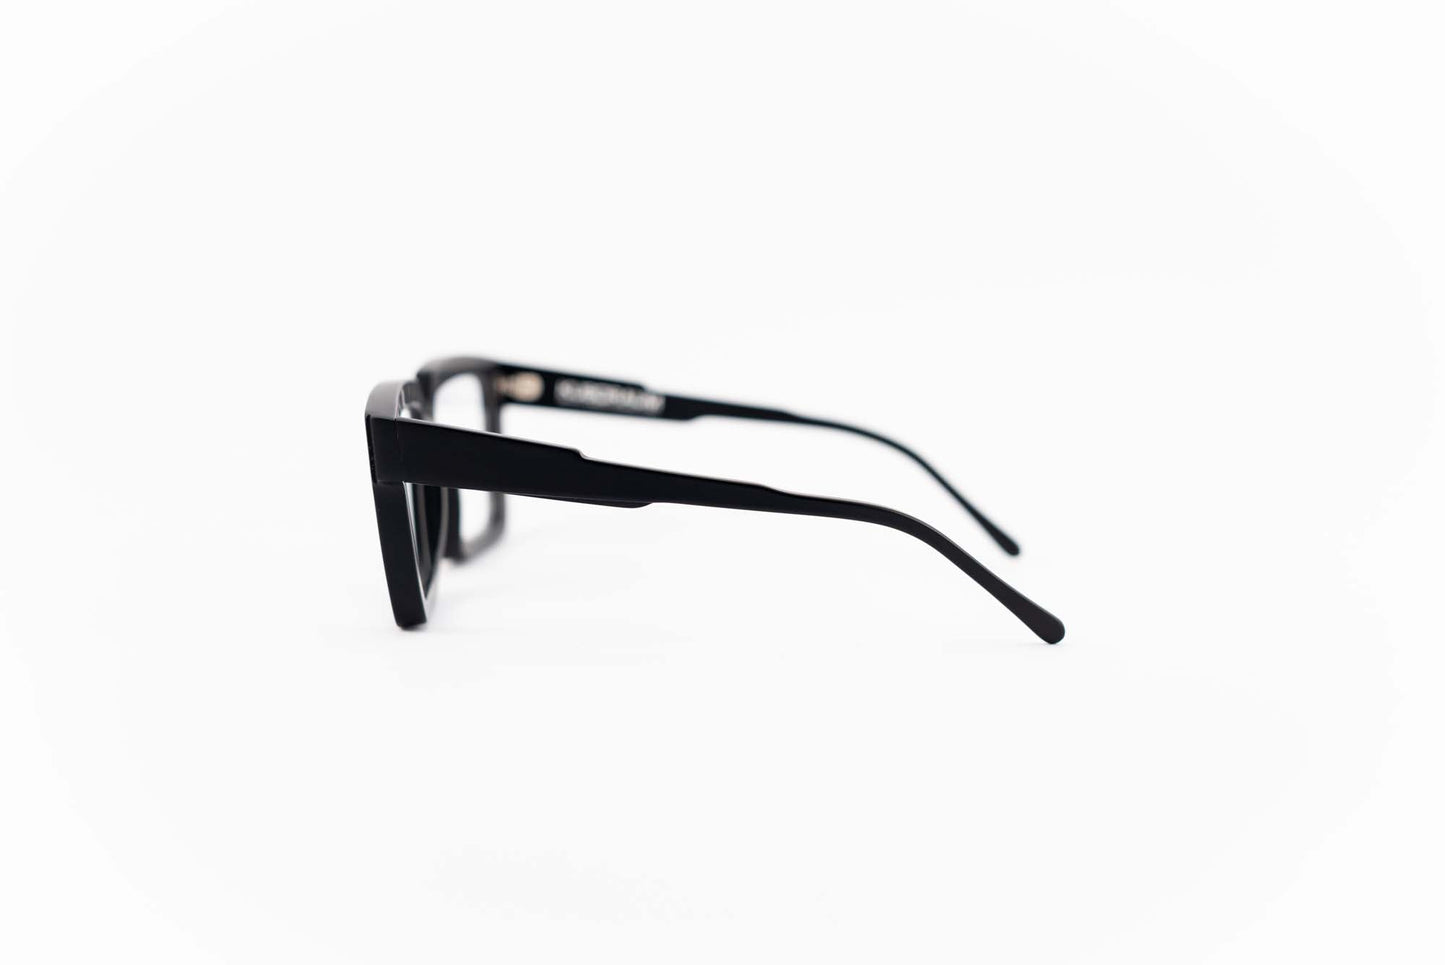 Kuboraum Occhiali da vista Nero / Acetato / Squadrato Kuboraum Maske K26 BM: occhiale in acetato nero squadrato da vista